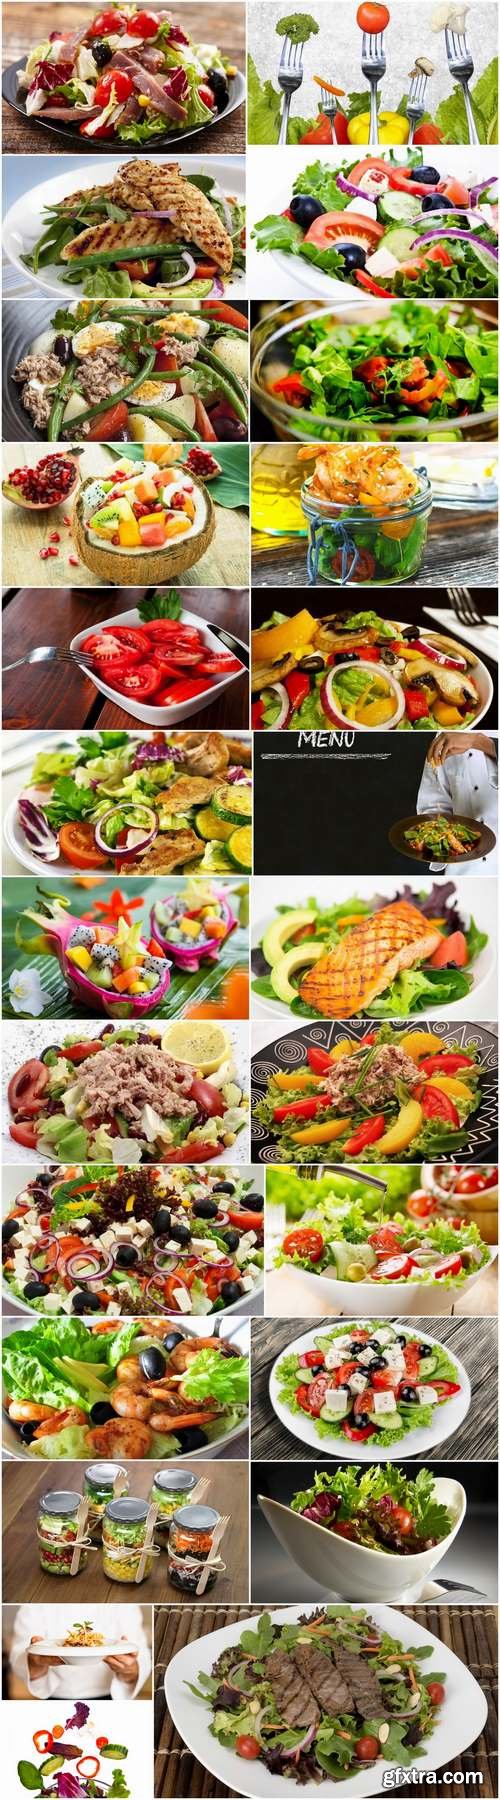 Various types of lettuce Greek seafood shrimp vegetable fruit 25 HQ Jpeg